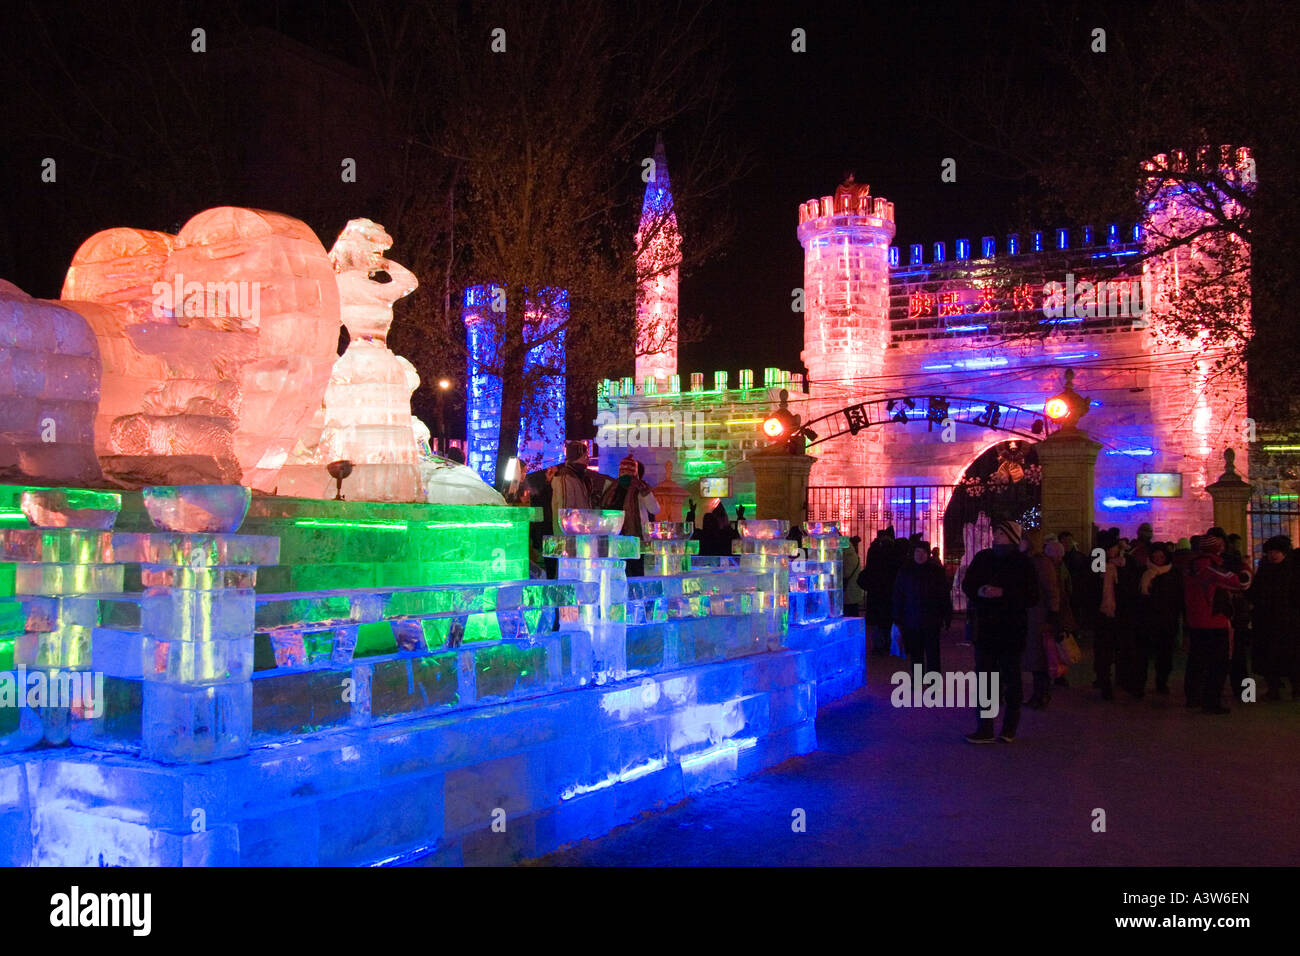 Harbin ice festival la nuit, Chine Banque D'Images